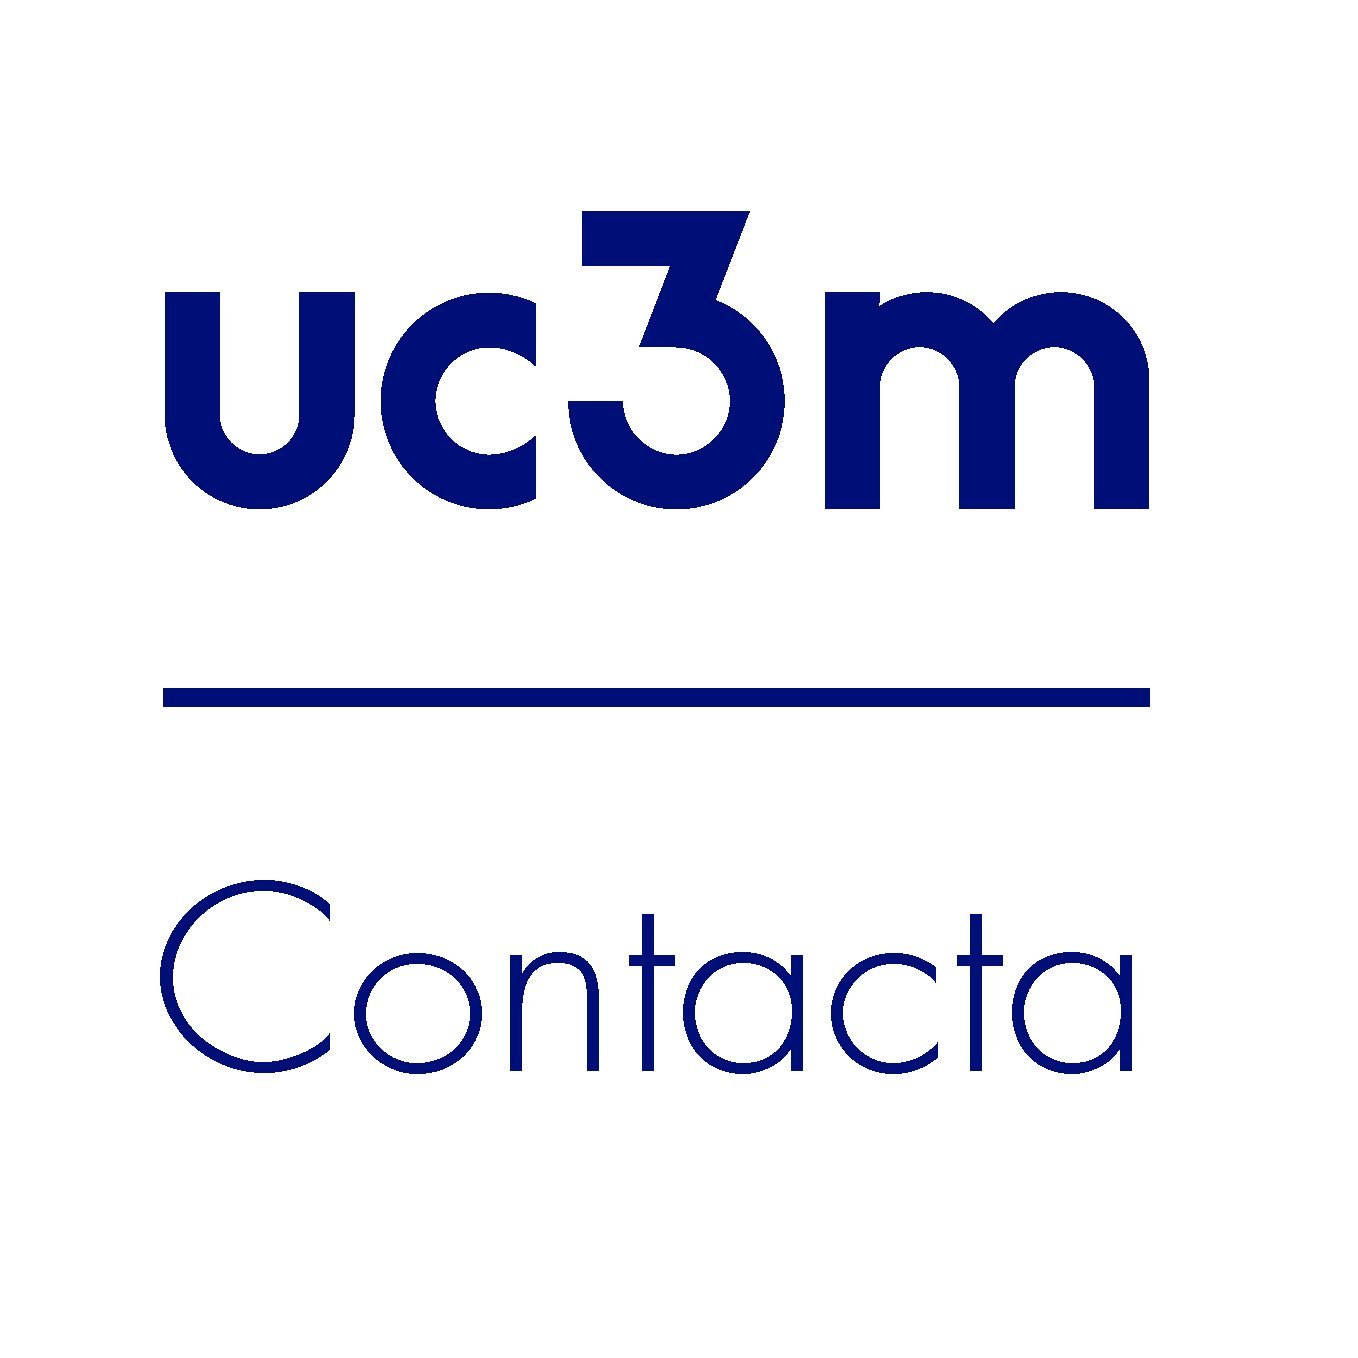 Contacta es la nueva comunidad de ayuda y soporte de la UC3M: Solicita información, comunica incidencias y haznos llegar tus opiniones o sugerencias.